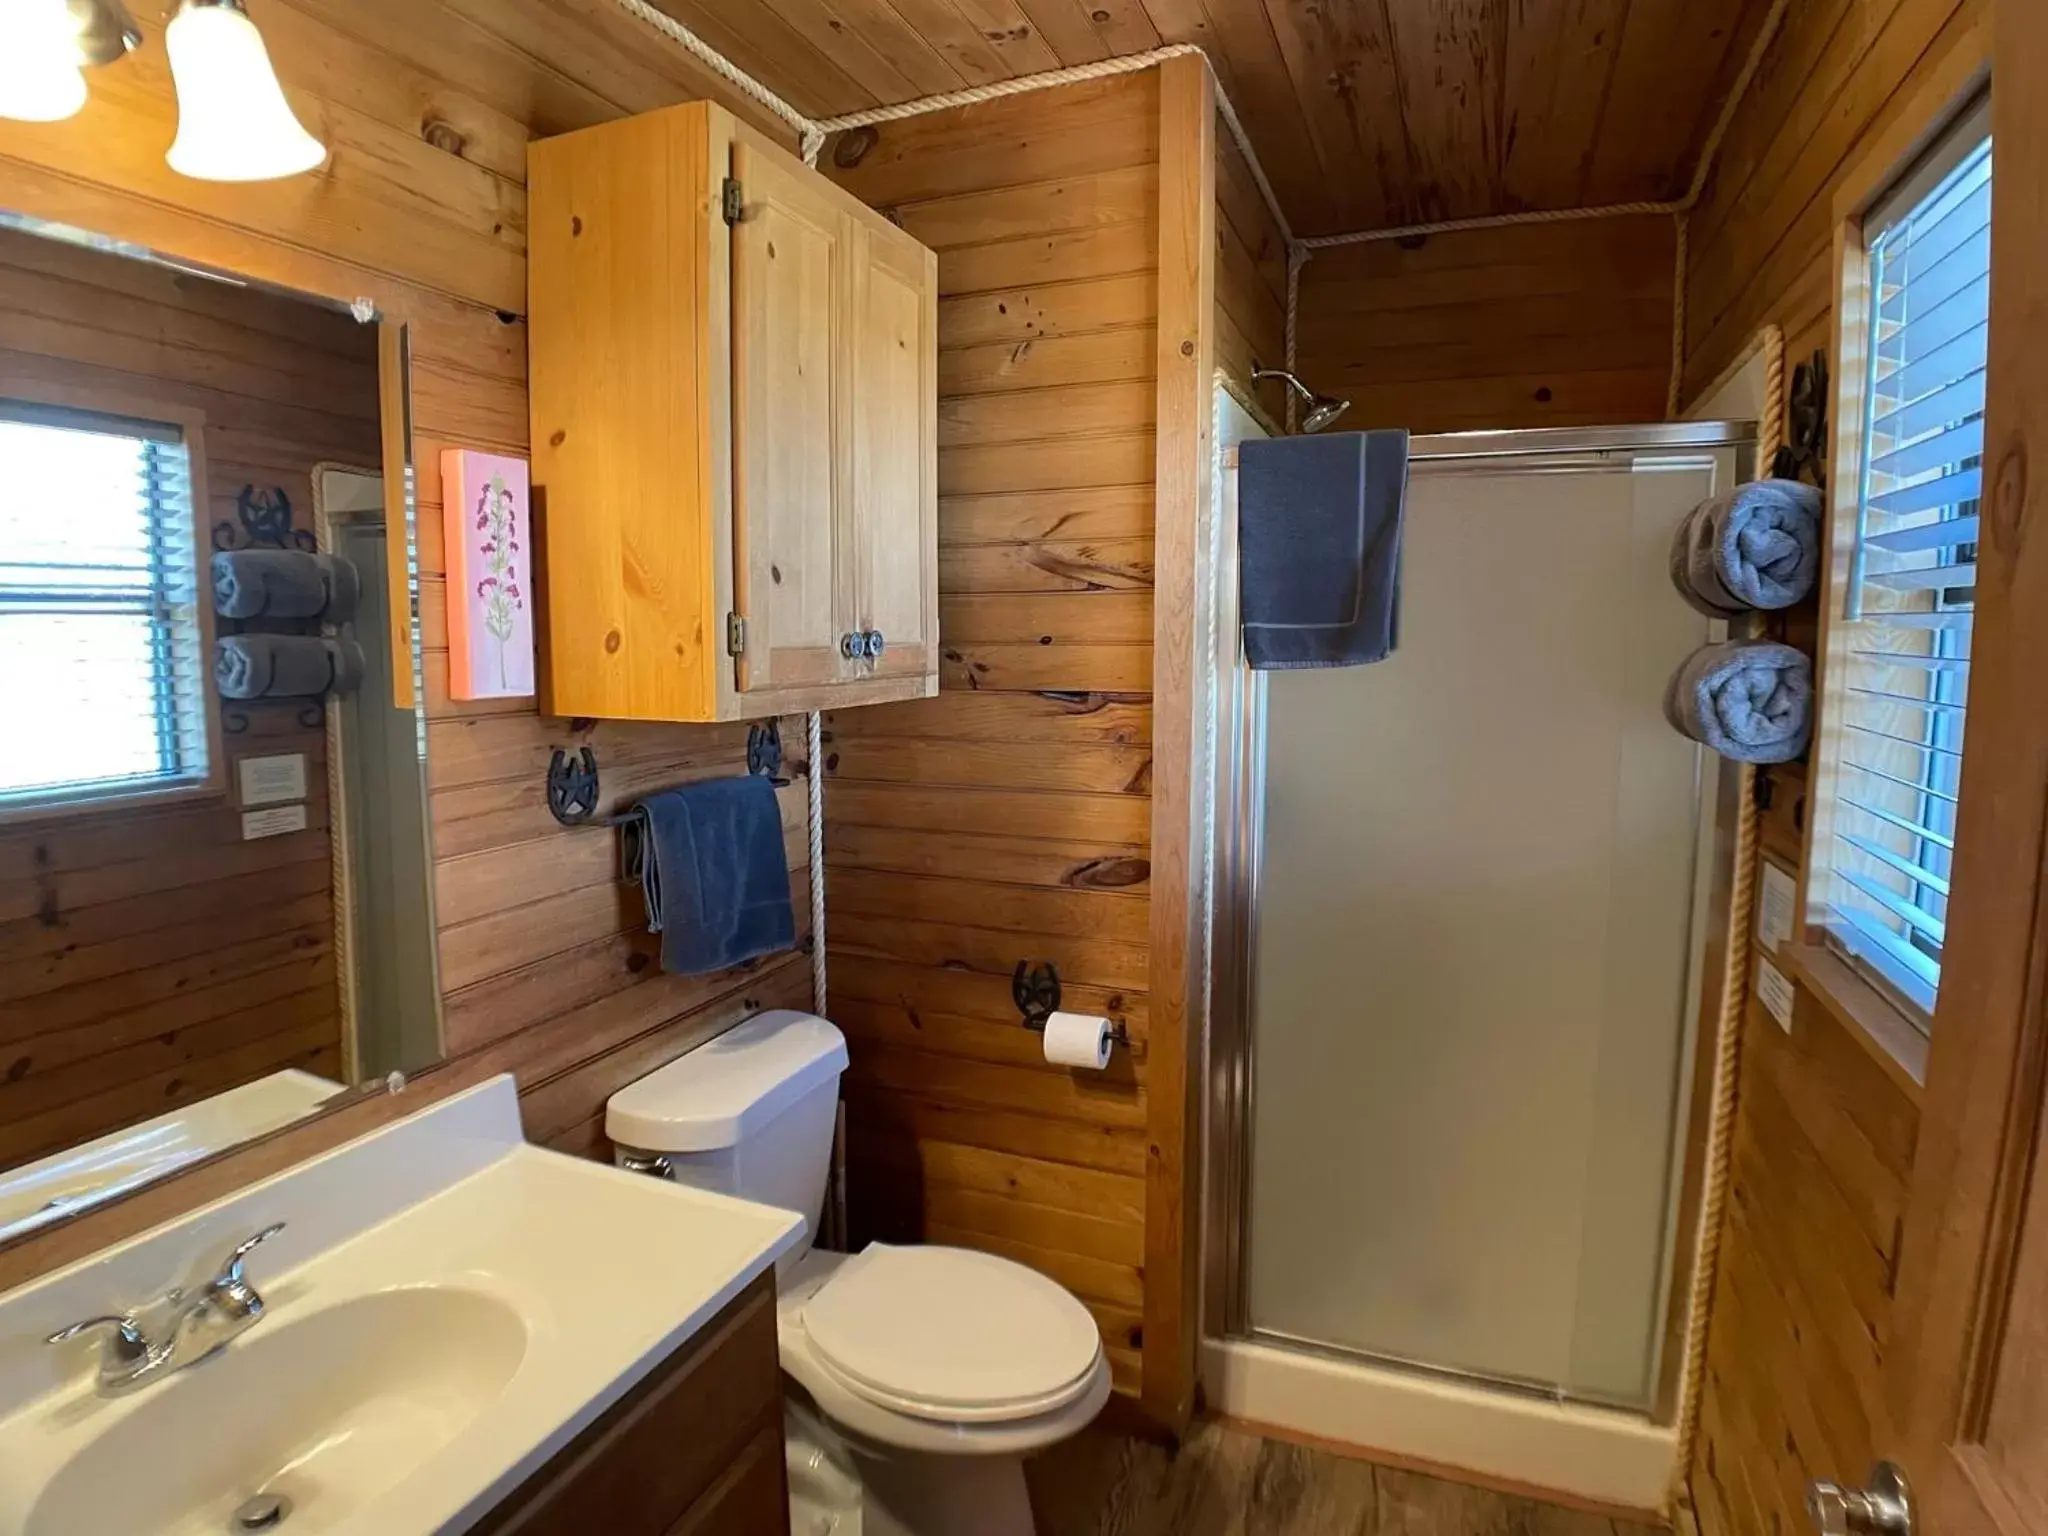 Public Bath, Bathroom in Walnut Canyon Cabins